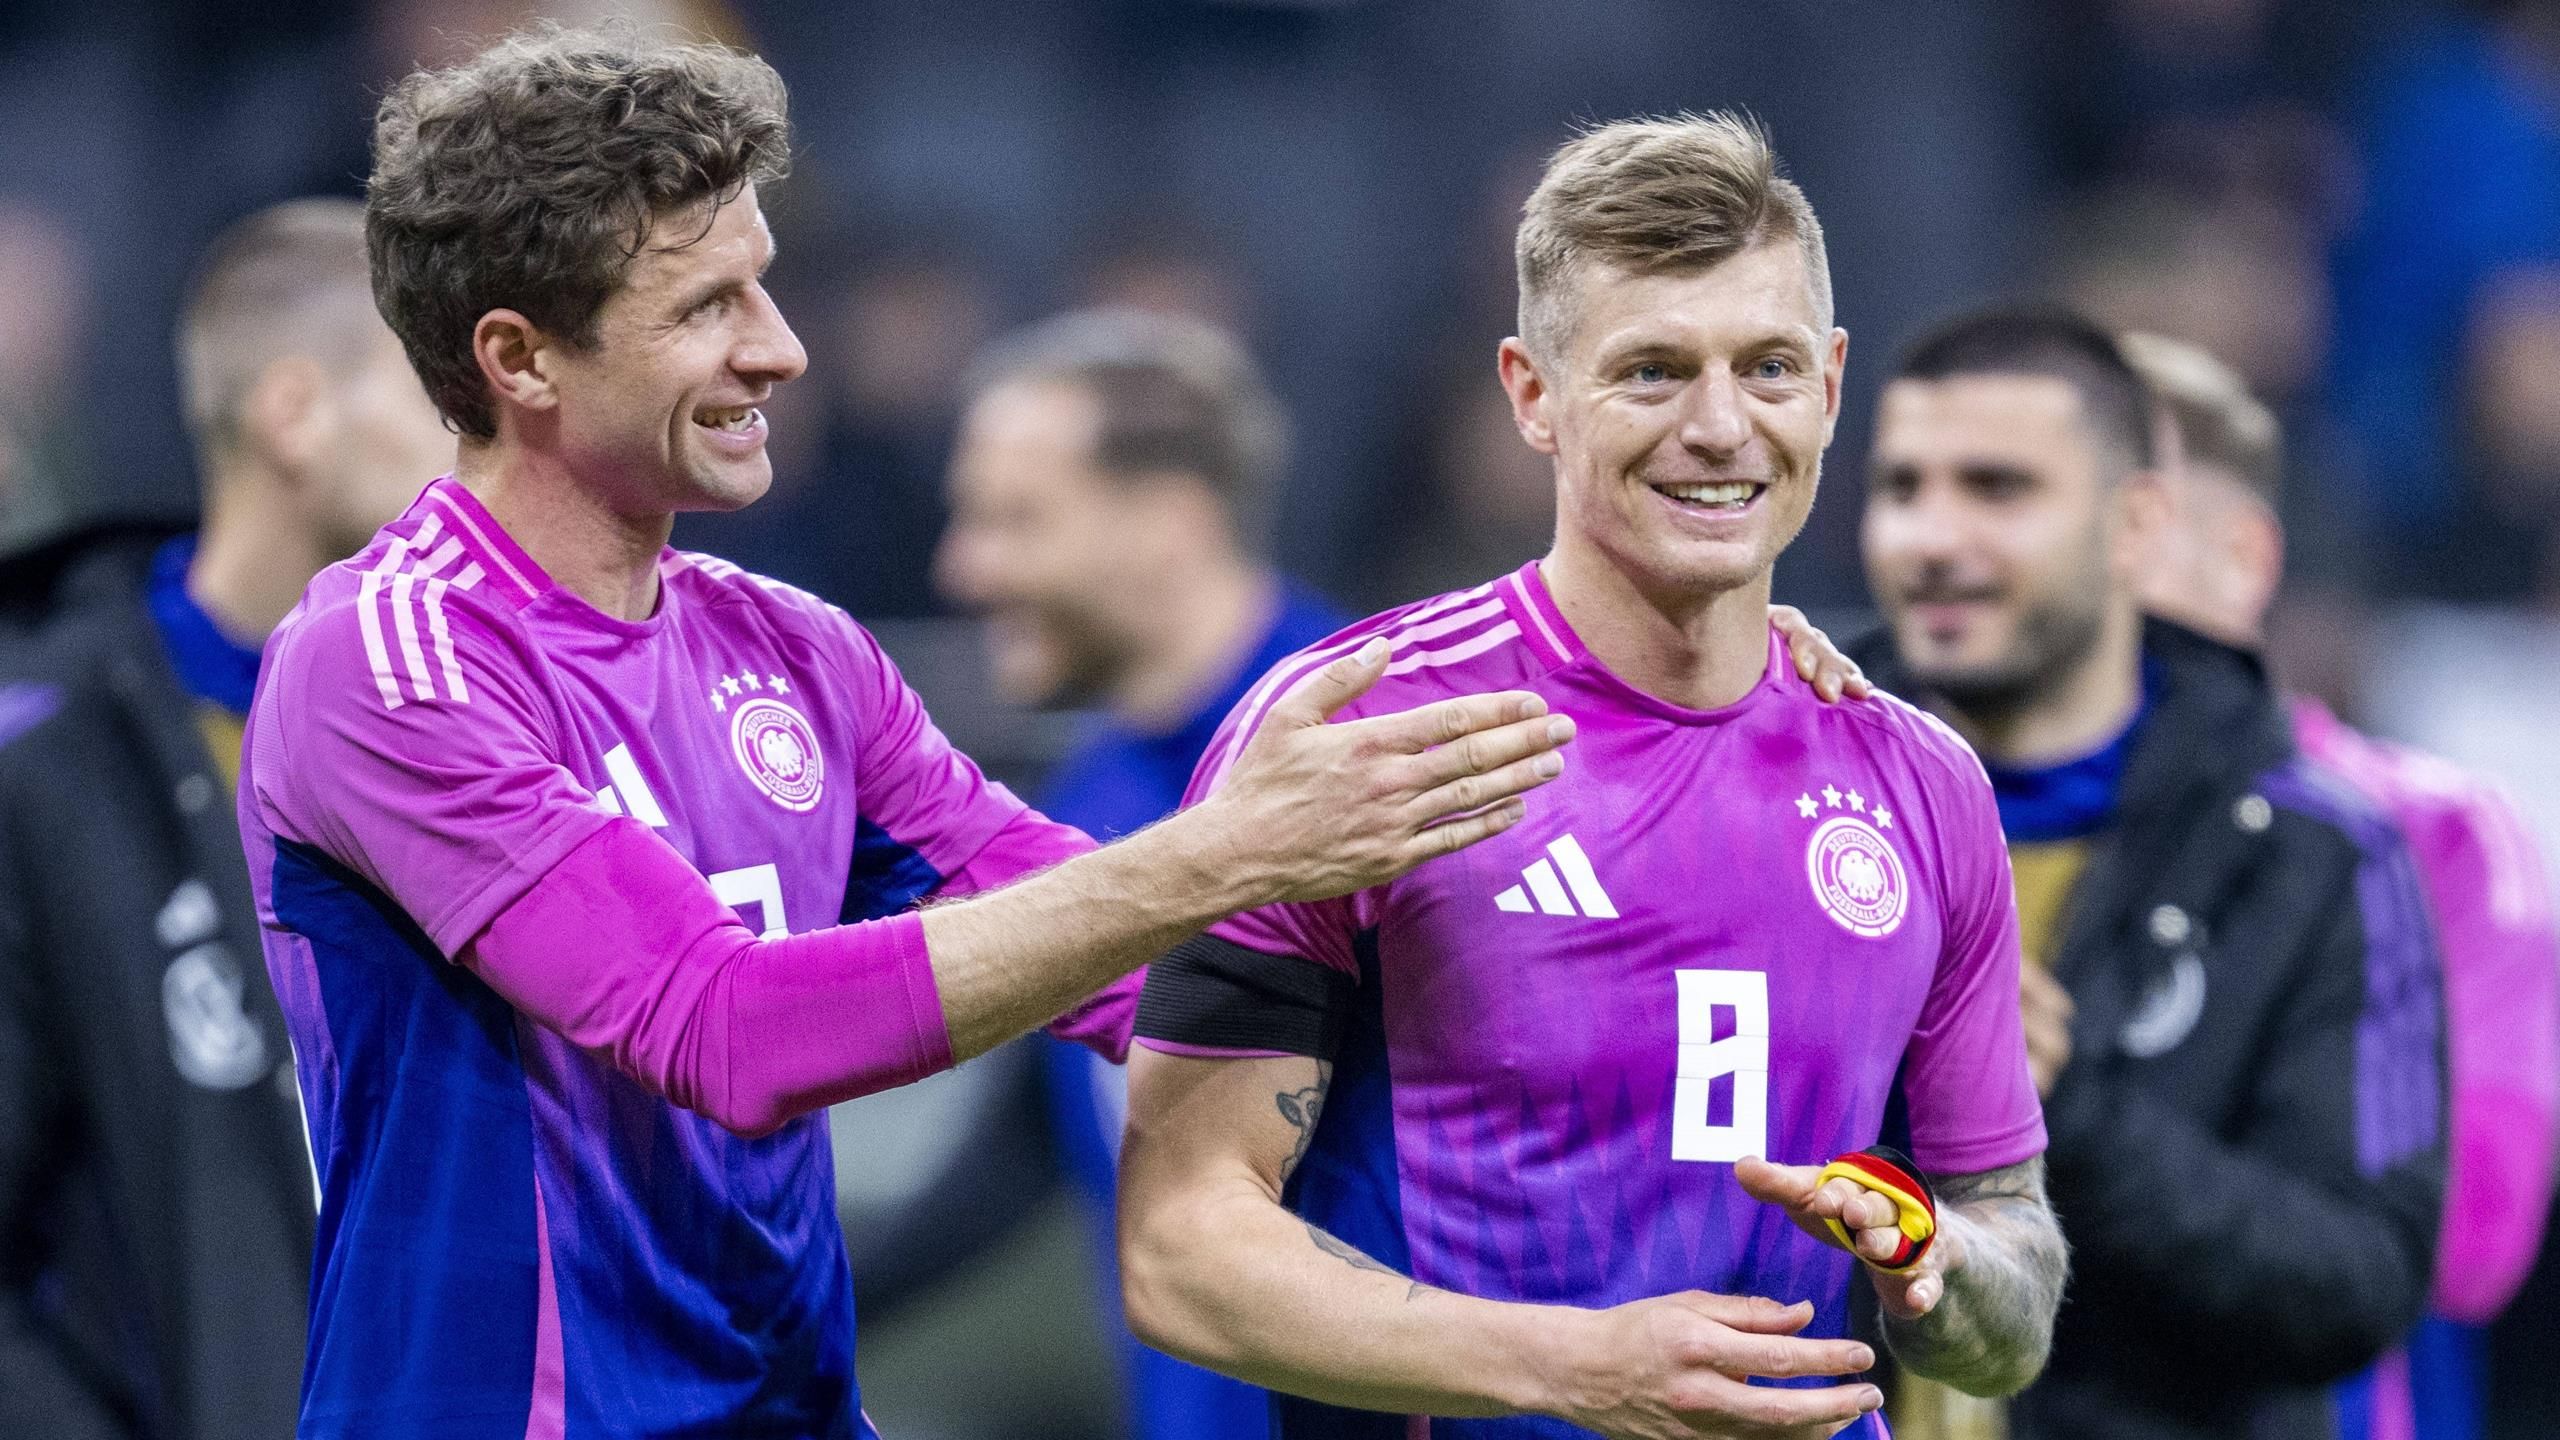 Persberichten: Duitsland vs. Nederland: De nationale ploeg domineert El Clásico en “grote dromen met Kroos”